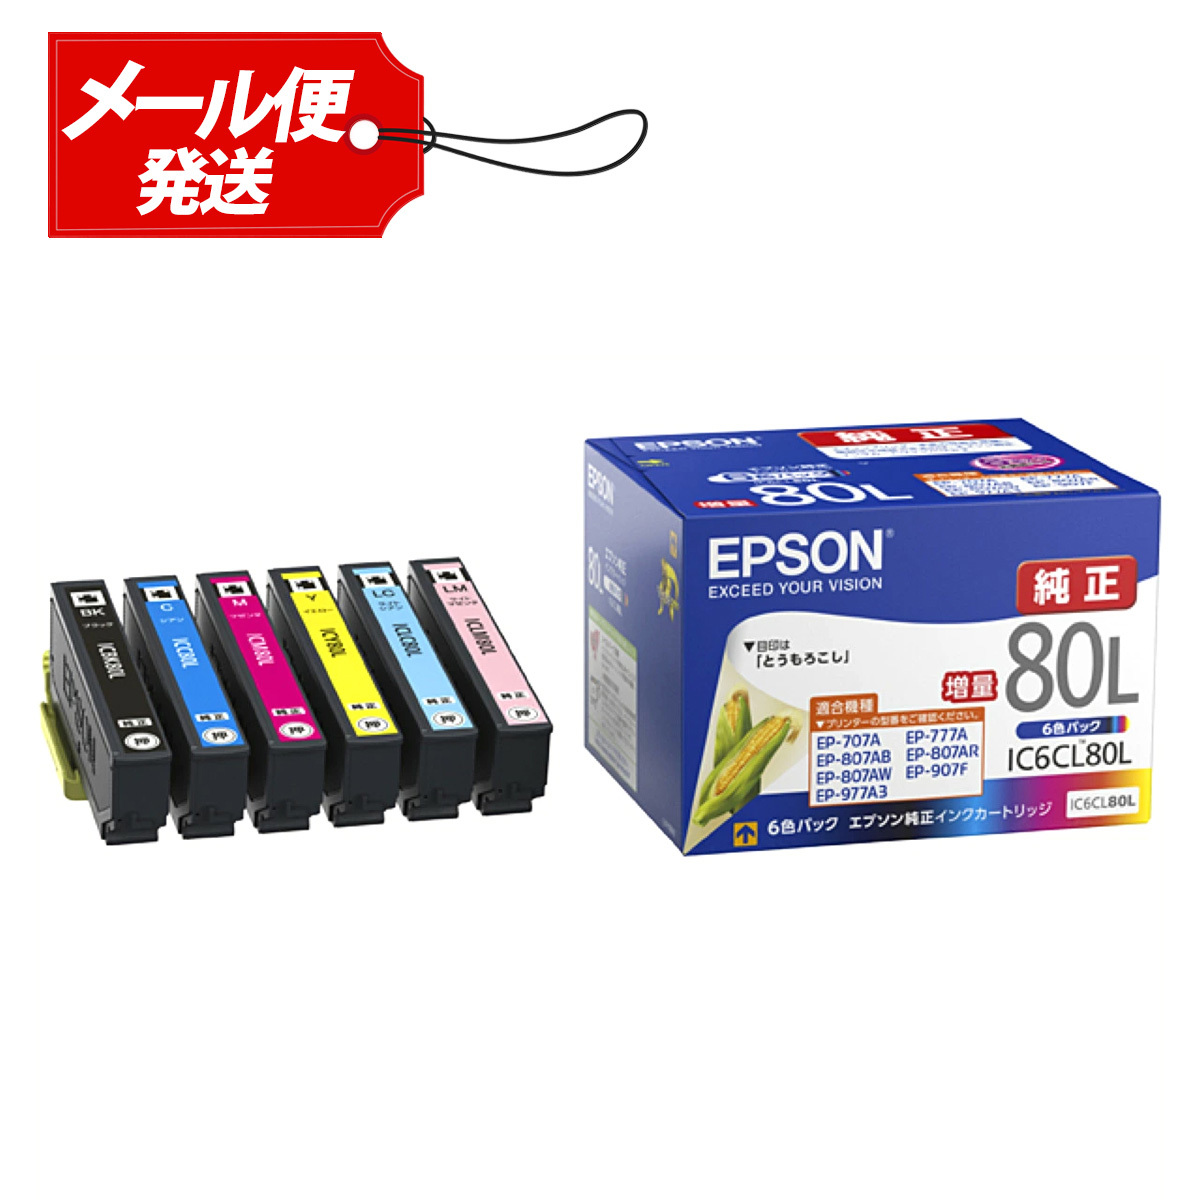 EPSON エプソン 純正 インクカートリッジ IC6CL80L 6色パック 増量 とうもろこし 年賀状 印刷 ハガキ 写真 仕事 家庭用 プリンター